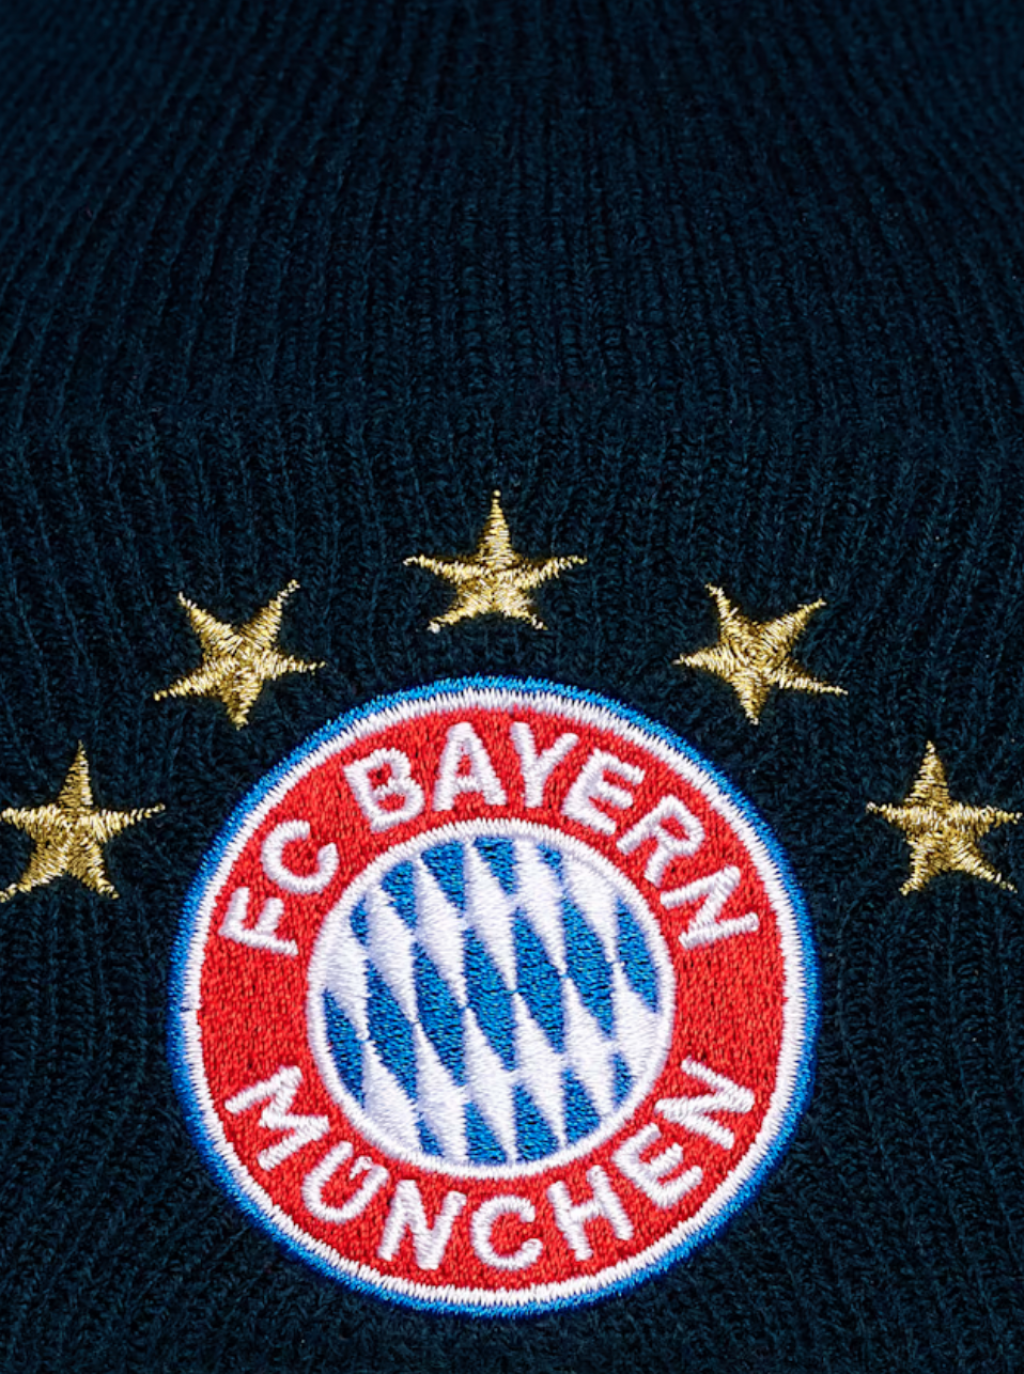 Dětská pletená čepice FC Bayern München, modrá